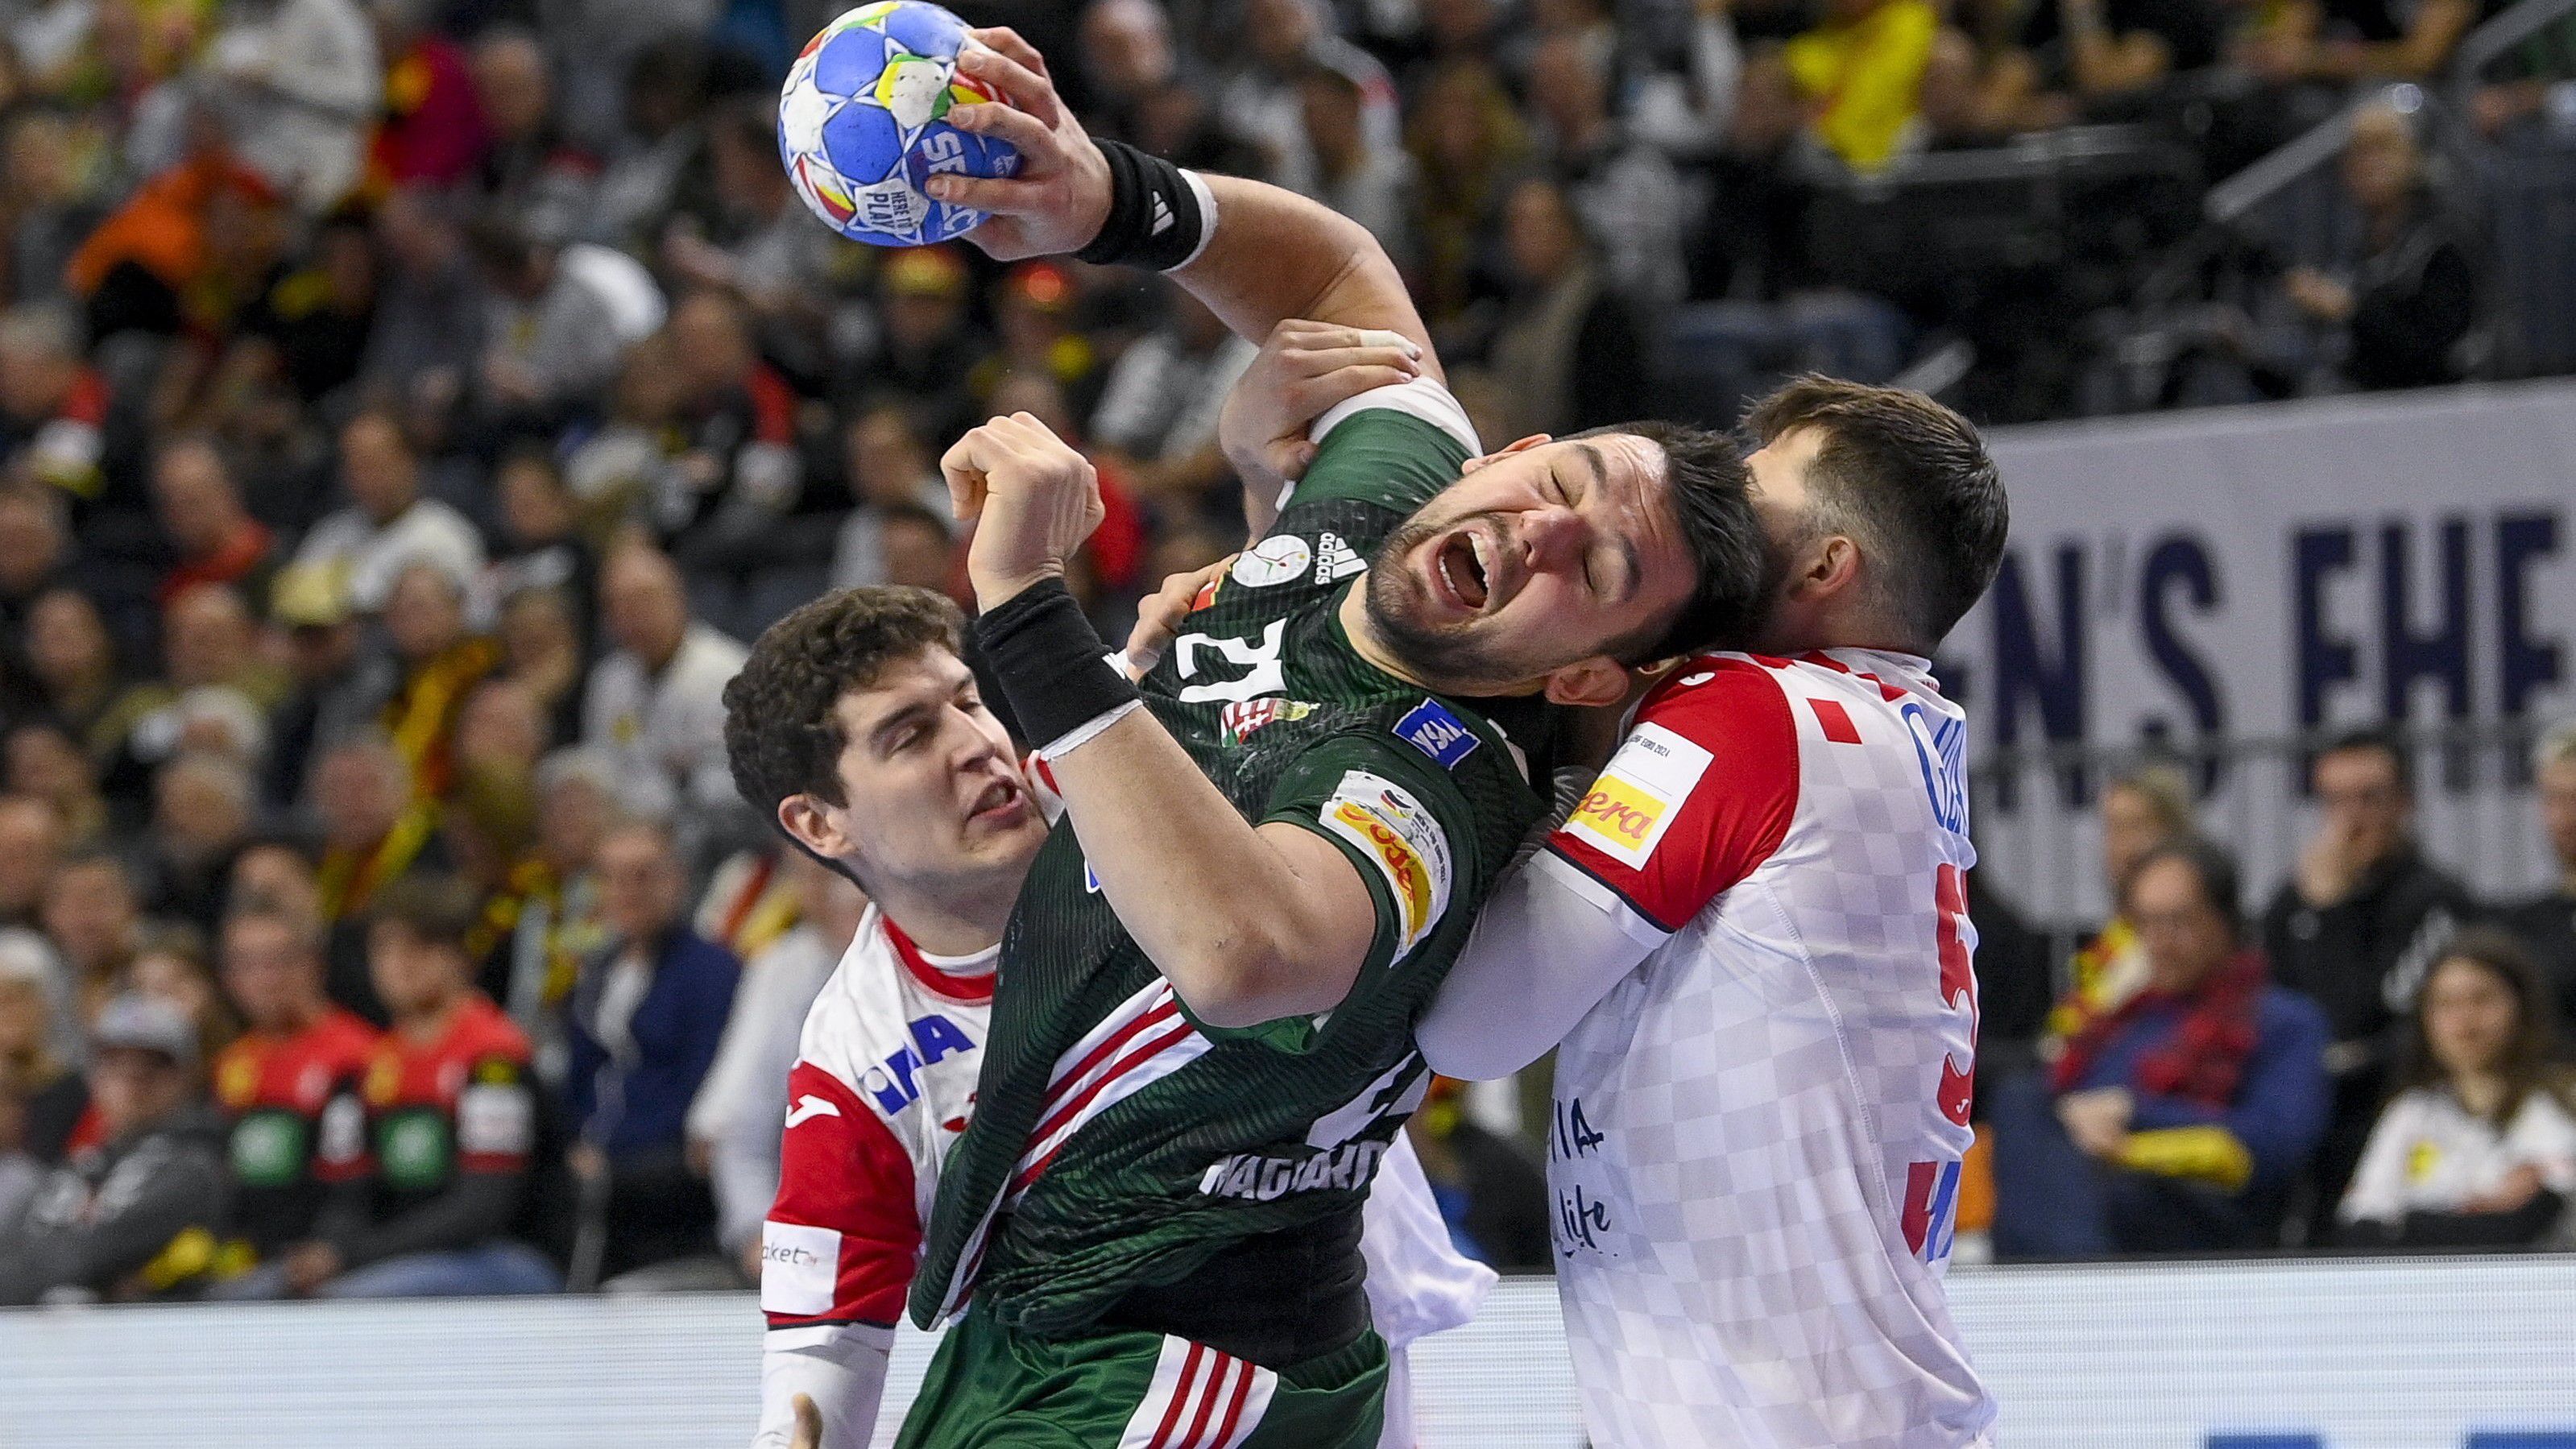 Megtört a 26 éves átok, Magyarország legyűrte Horvátországot az Eb-középdöntőben